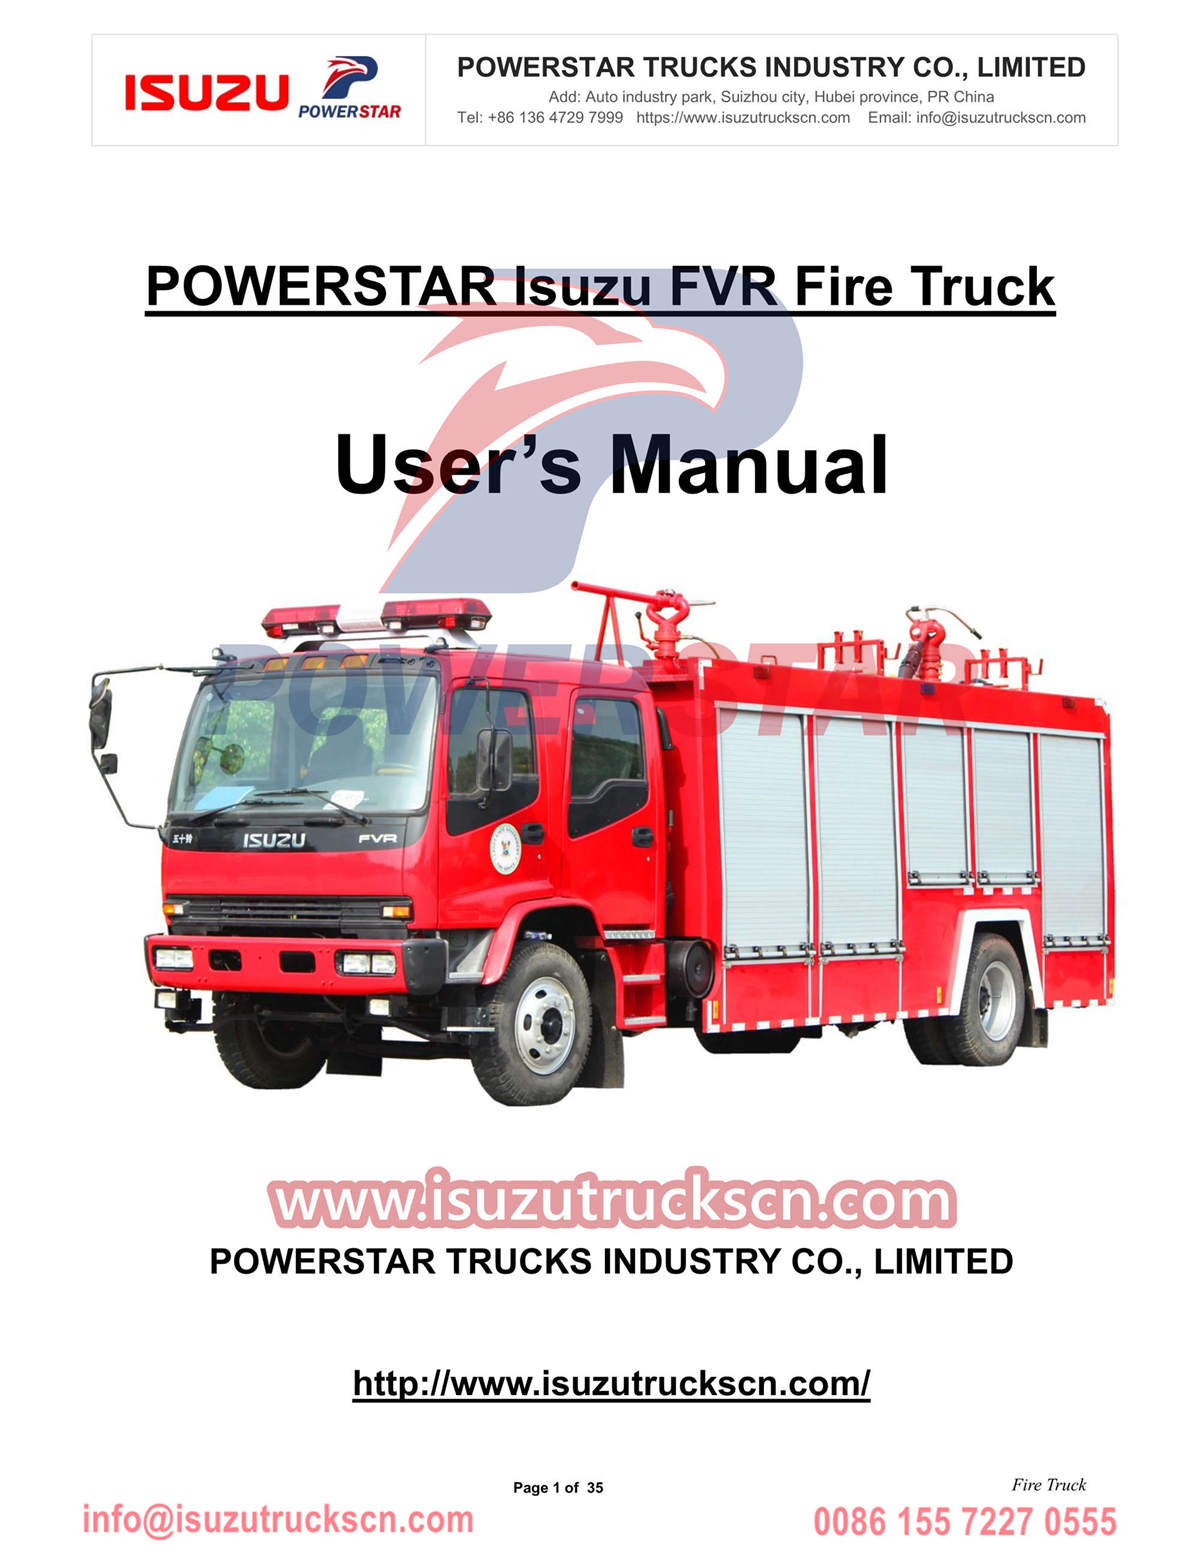 Exportation manuelle du camion de pompiers Isuzu FVR 6cbm vers le Nigeria
        